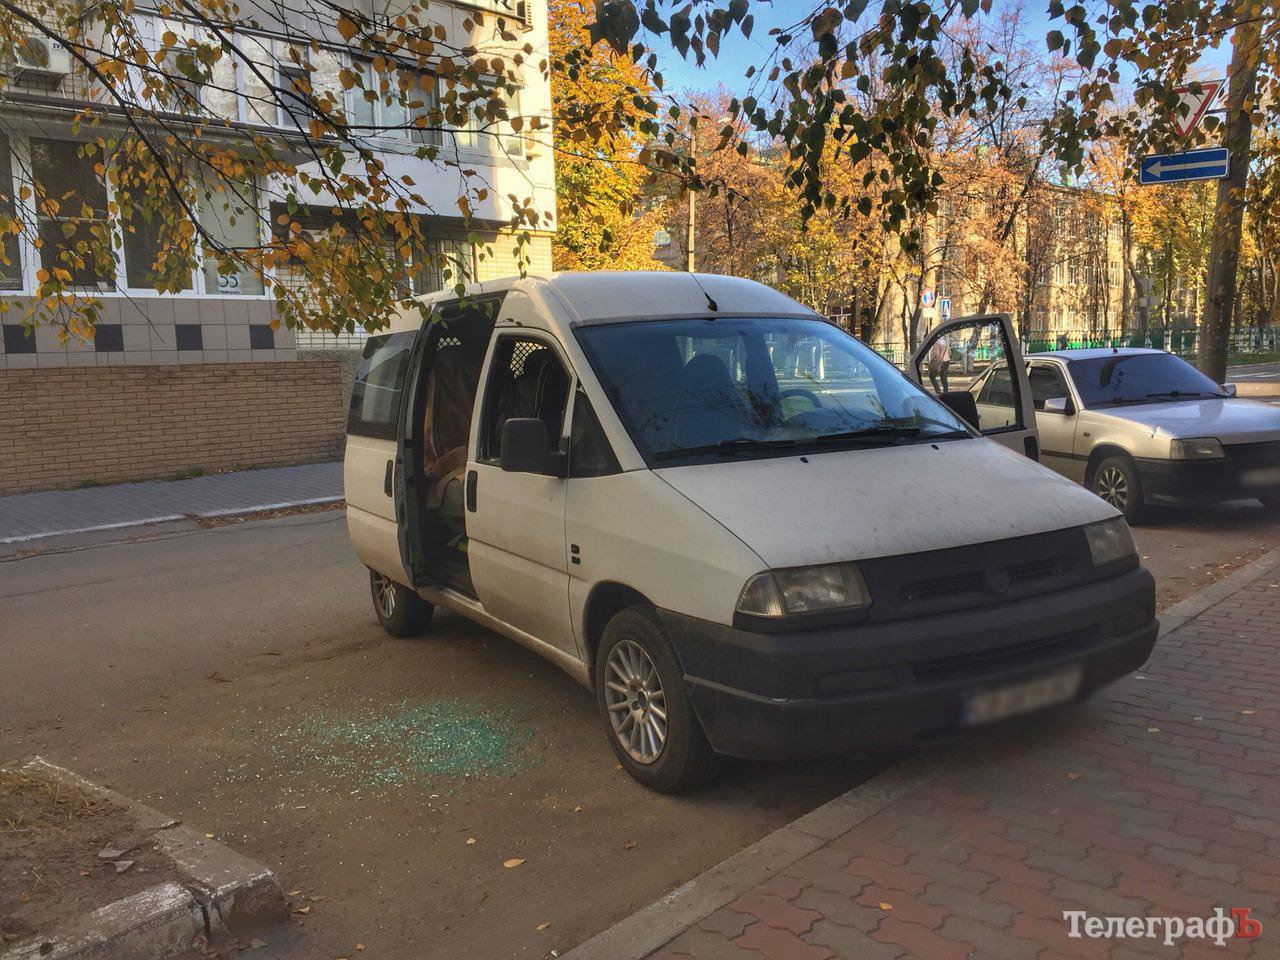 Спортсменам, приехавшим на соревнования в Кременчуг, разбили окно в машине
